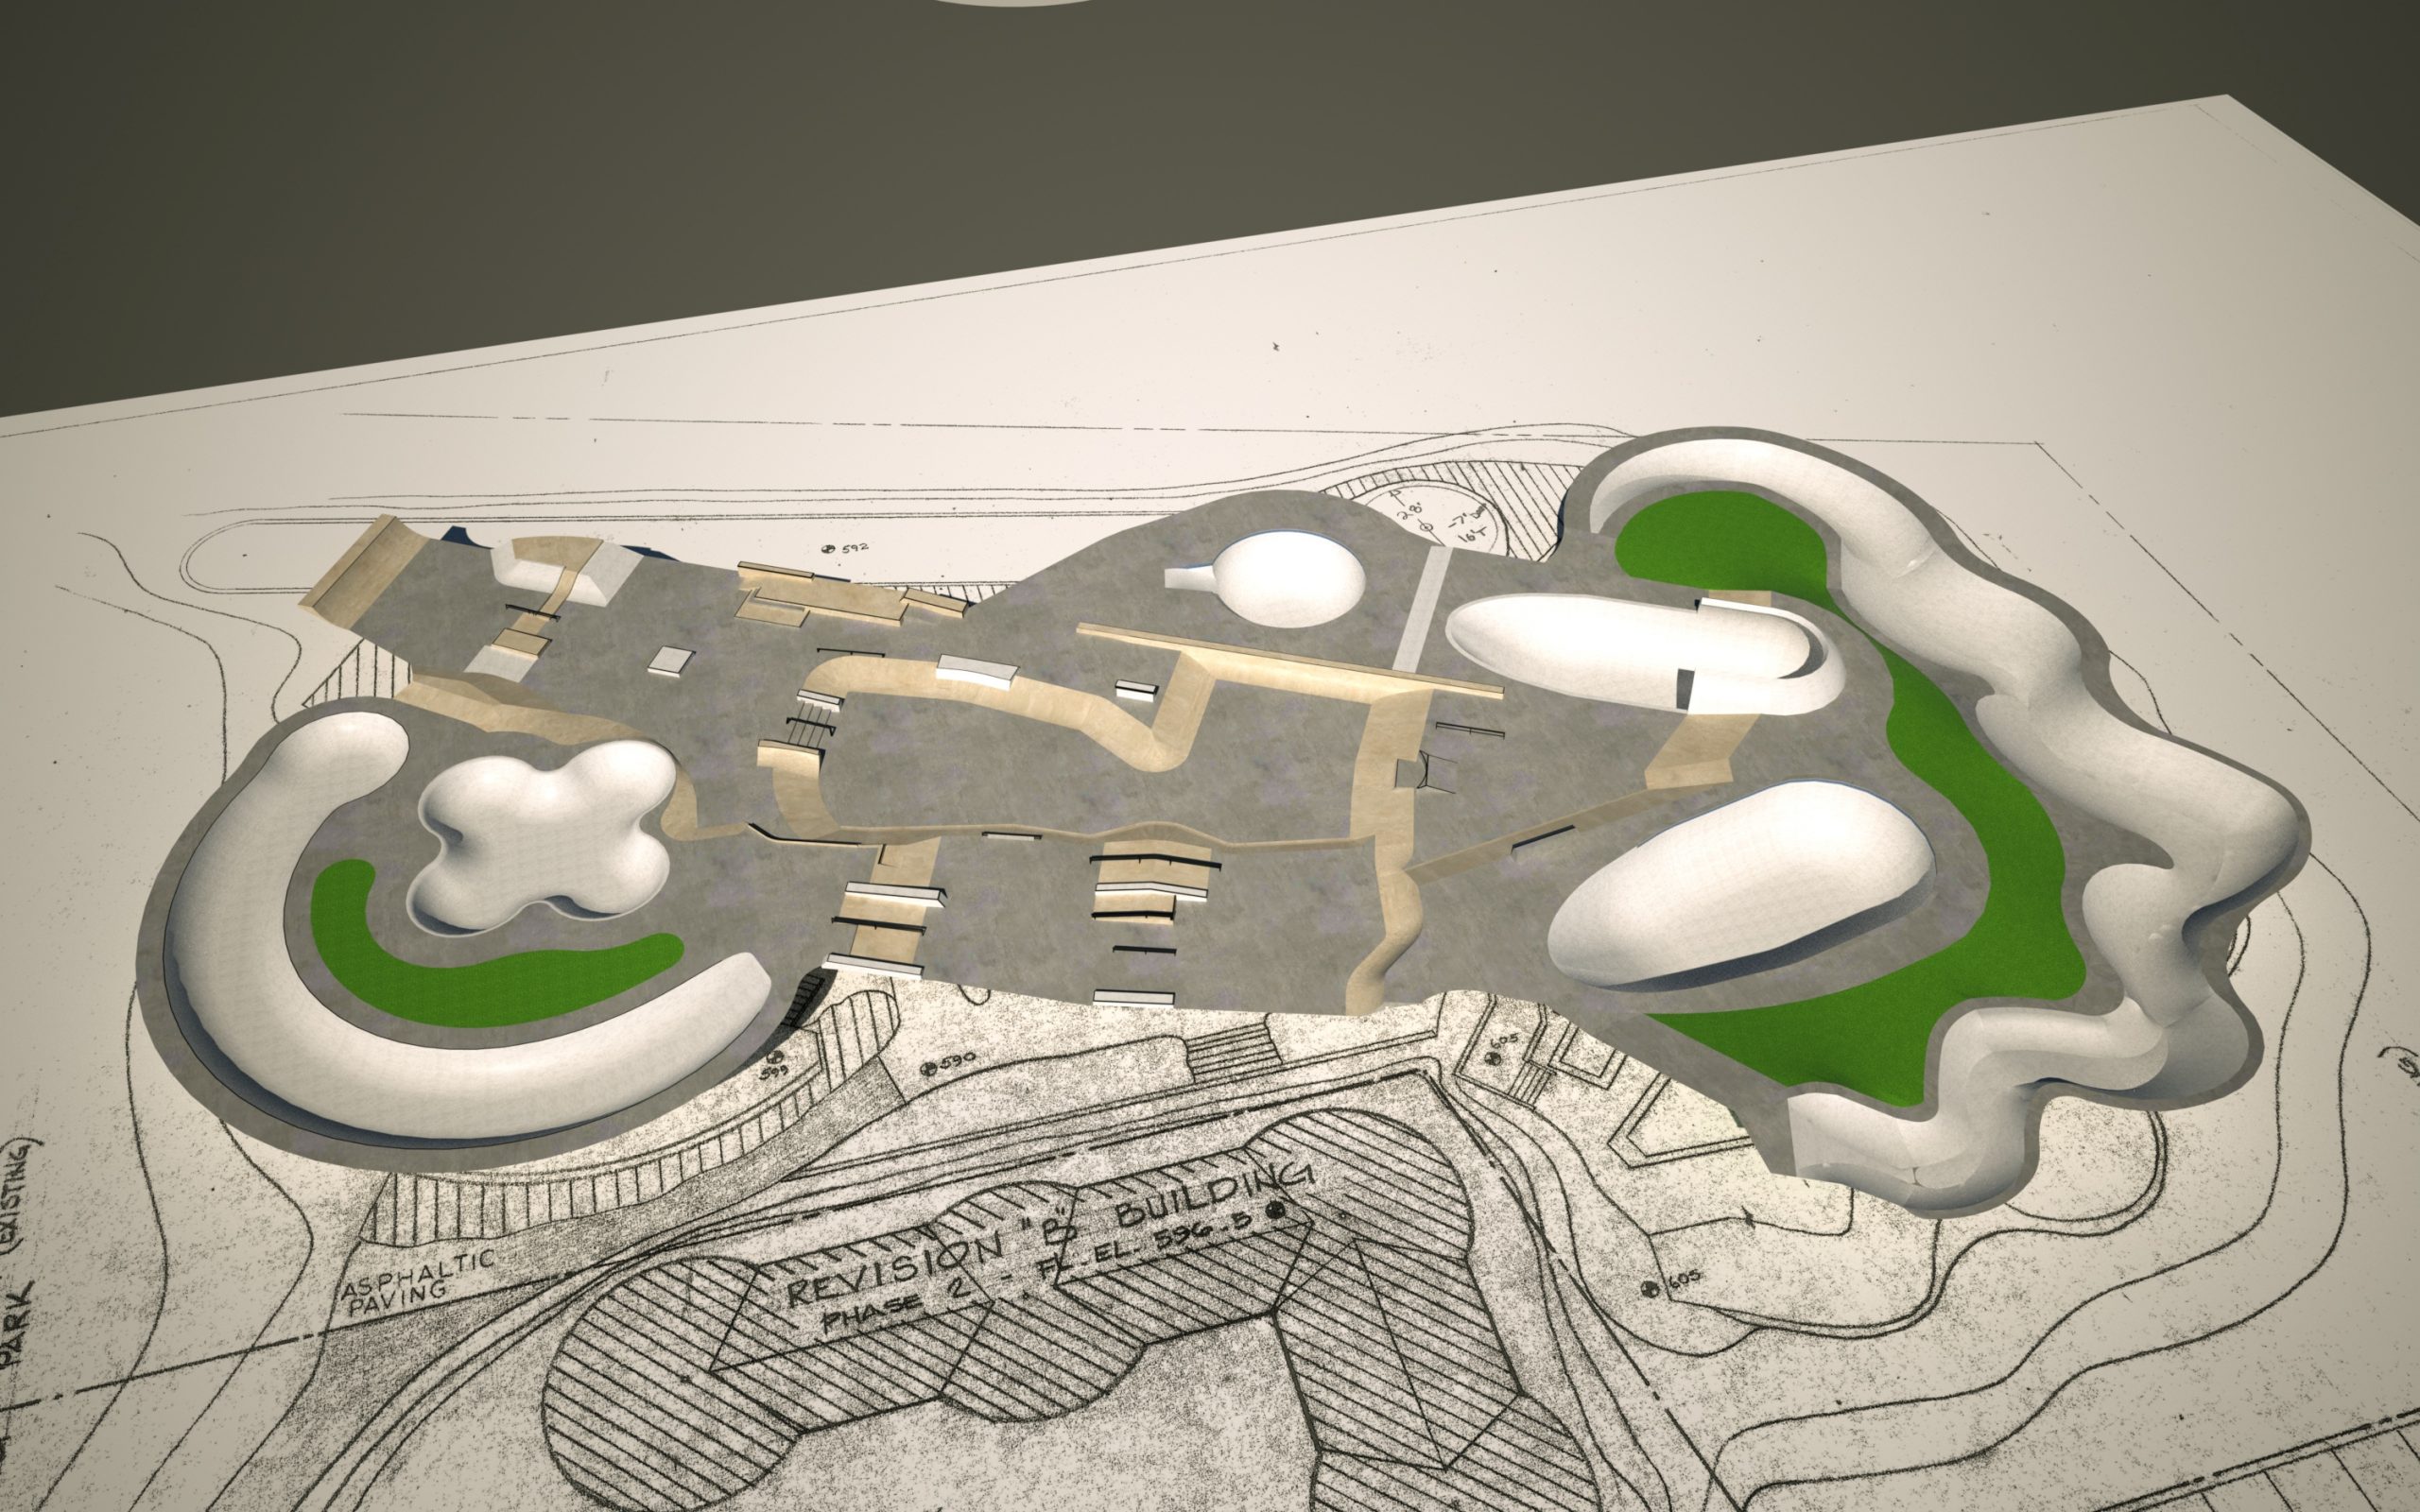 rendering of the proposed skatepark